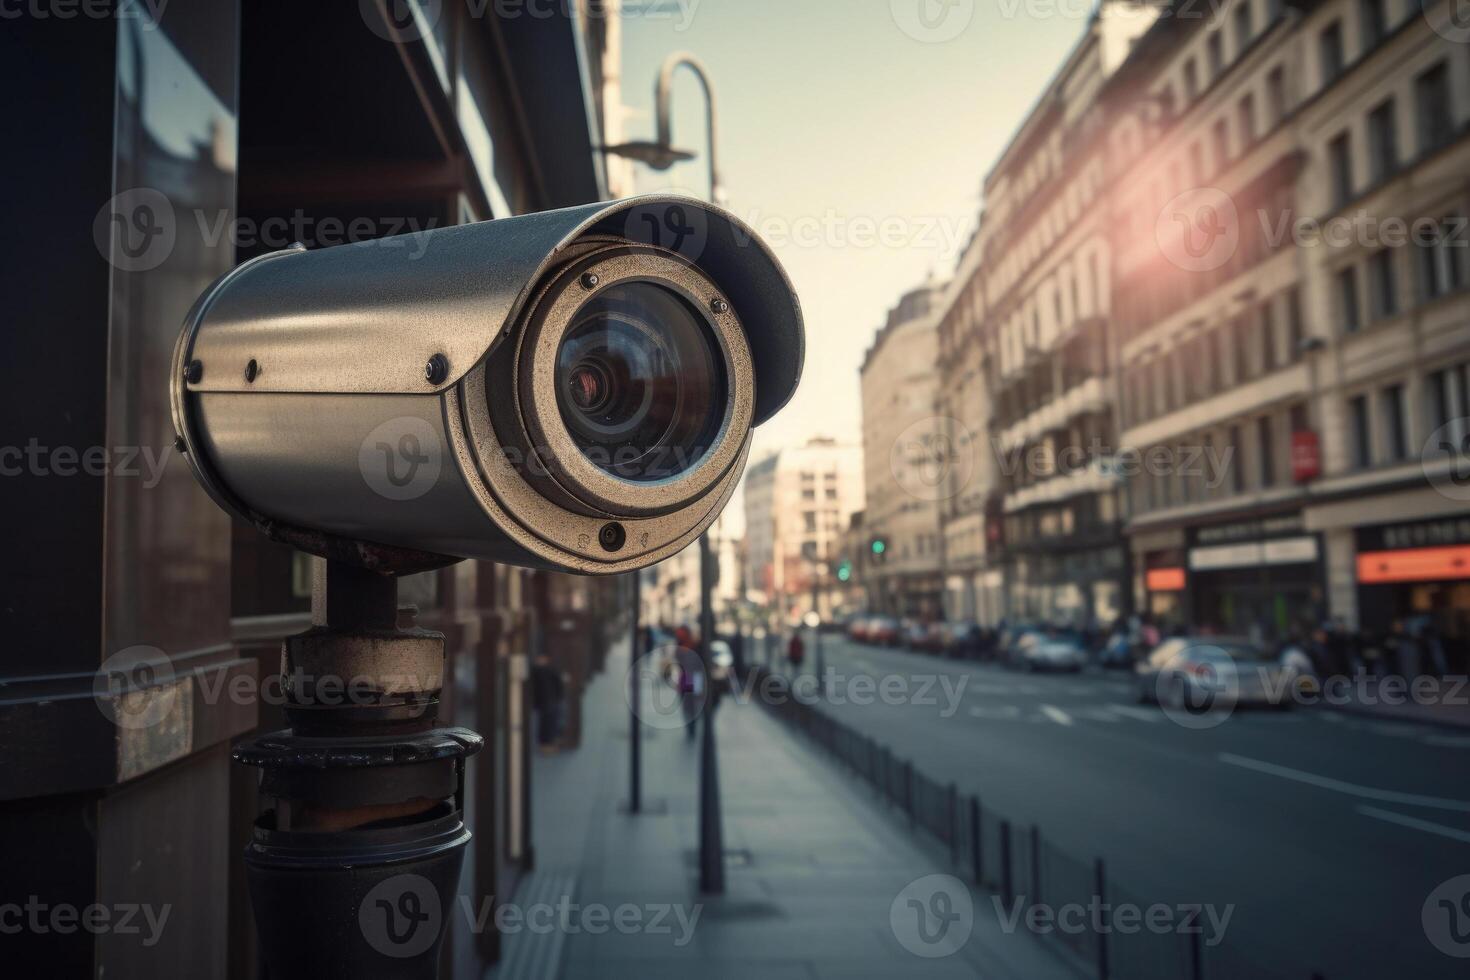 Cámara Cctv Concepto Cámara Vigilancia Vigilancia Con Sistema Seguridad  Estacionamiento: fotografía de stock © jayzynism #469767504